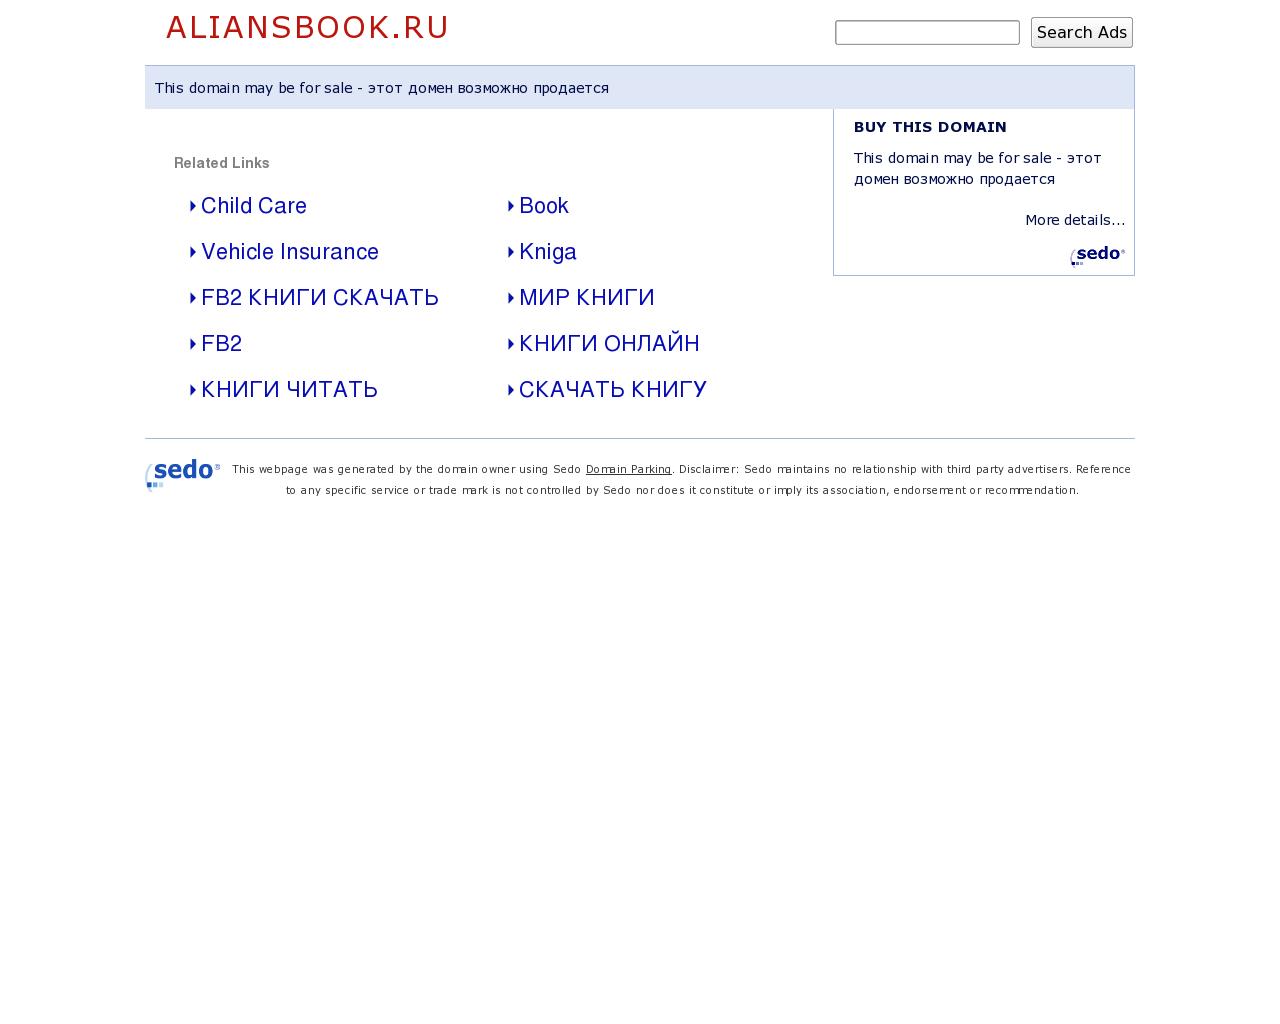 Изображение сайта aliansbook.ru в разрешении 1280x1024